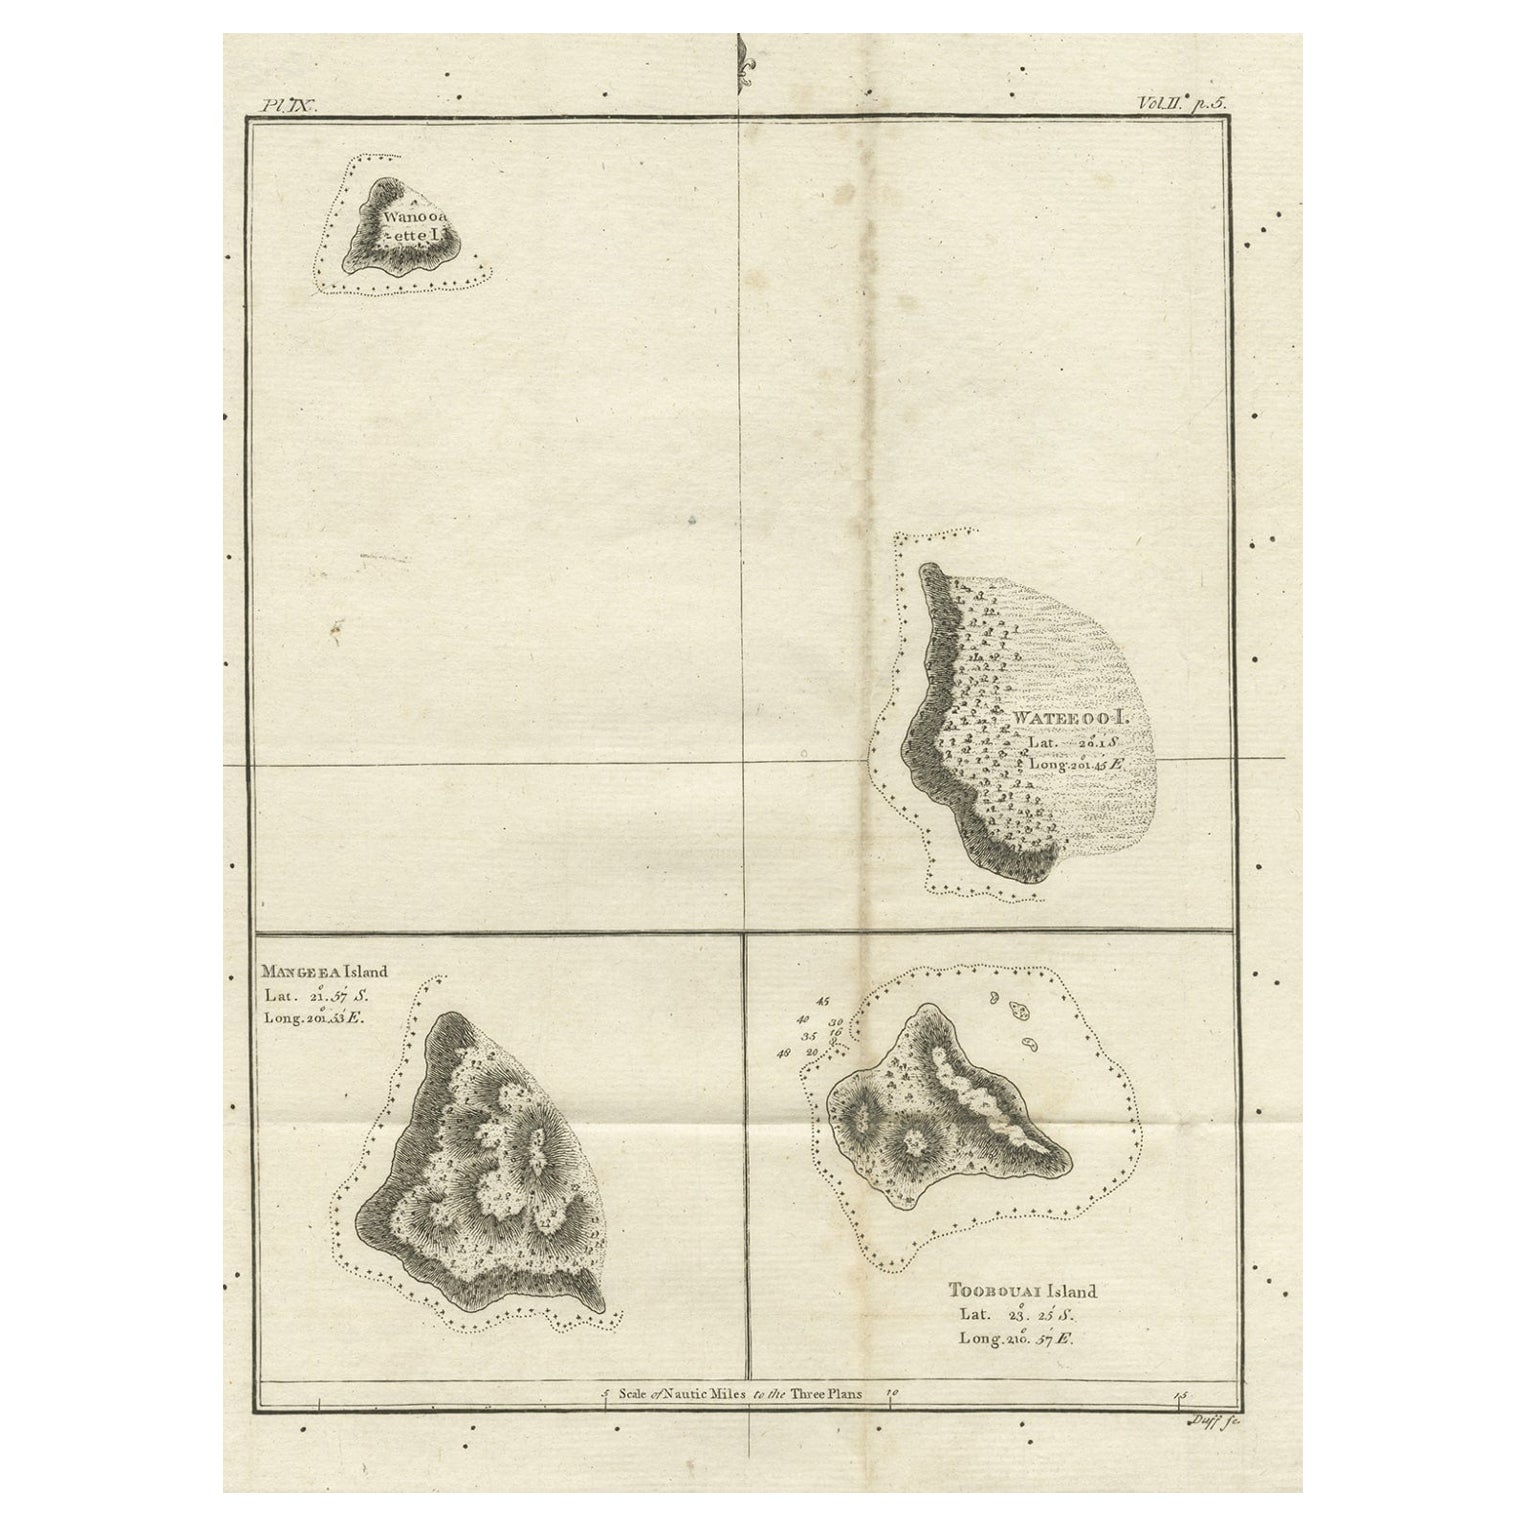 Old Map of the Cook Islands Takutea, Atiu, Mangaiac and Tubuai, Polynesia, 1781 For Sale